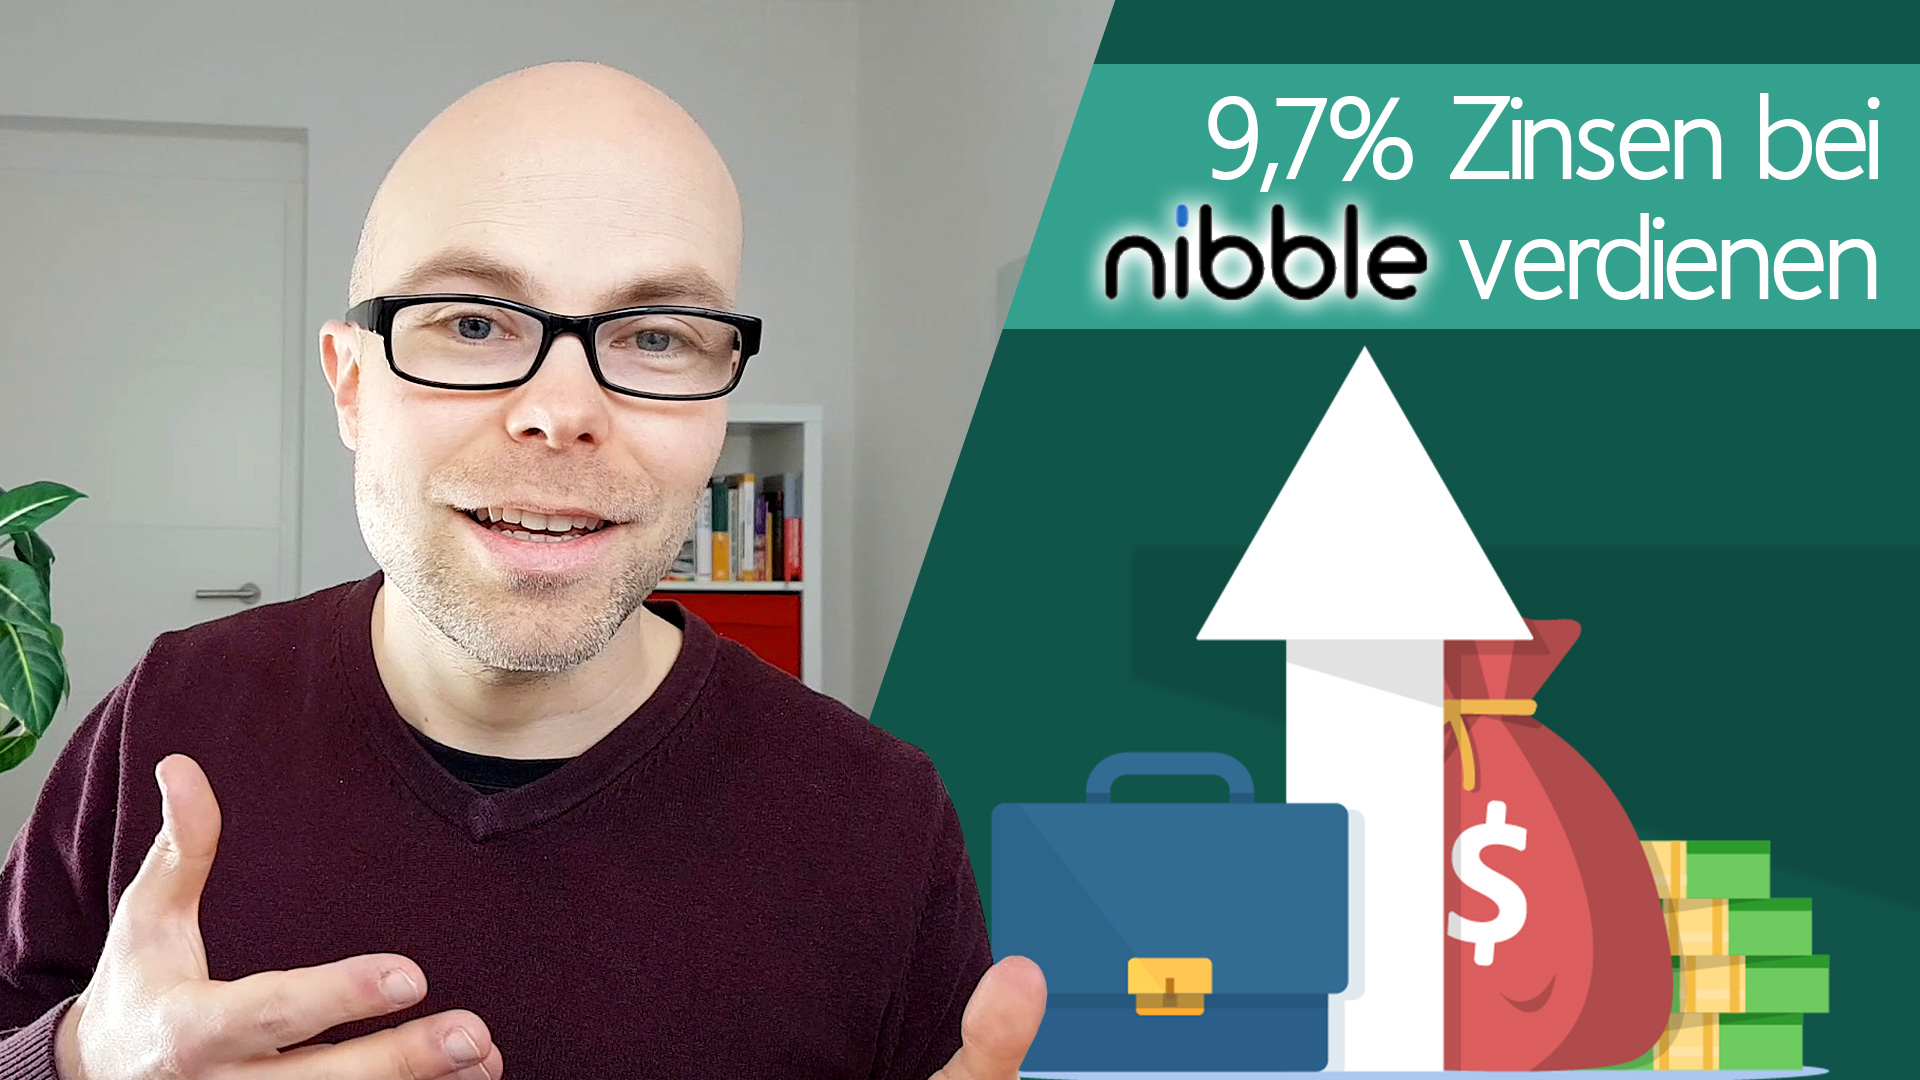 Nibble: 9,7% Zinsen auf der neuen P2P-Plattform verdienen!